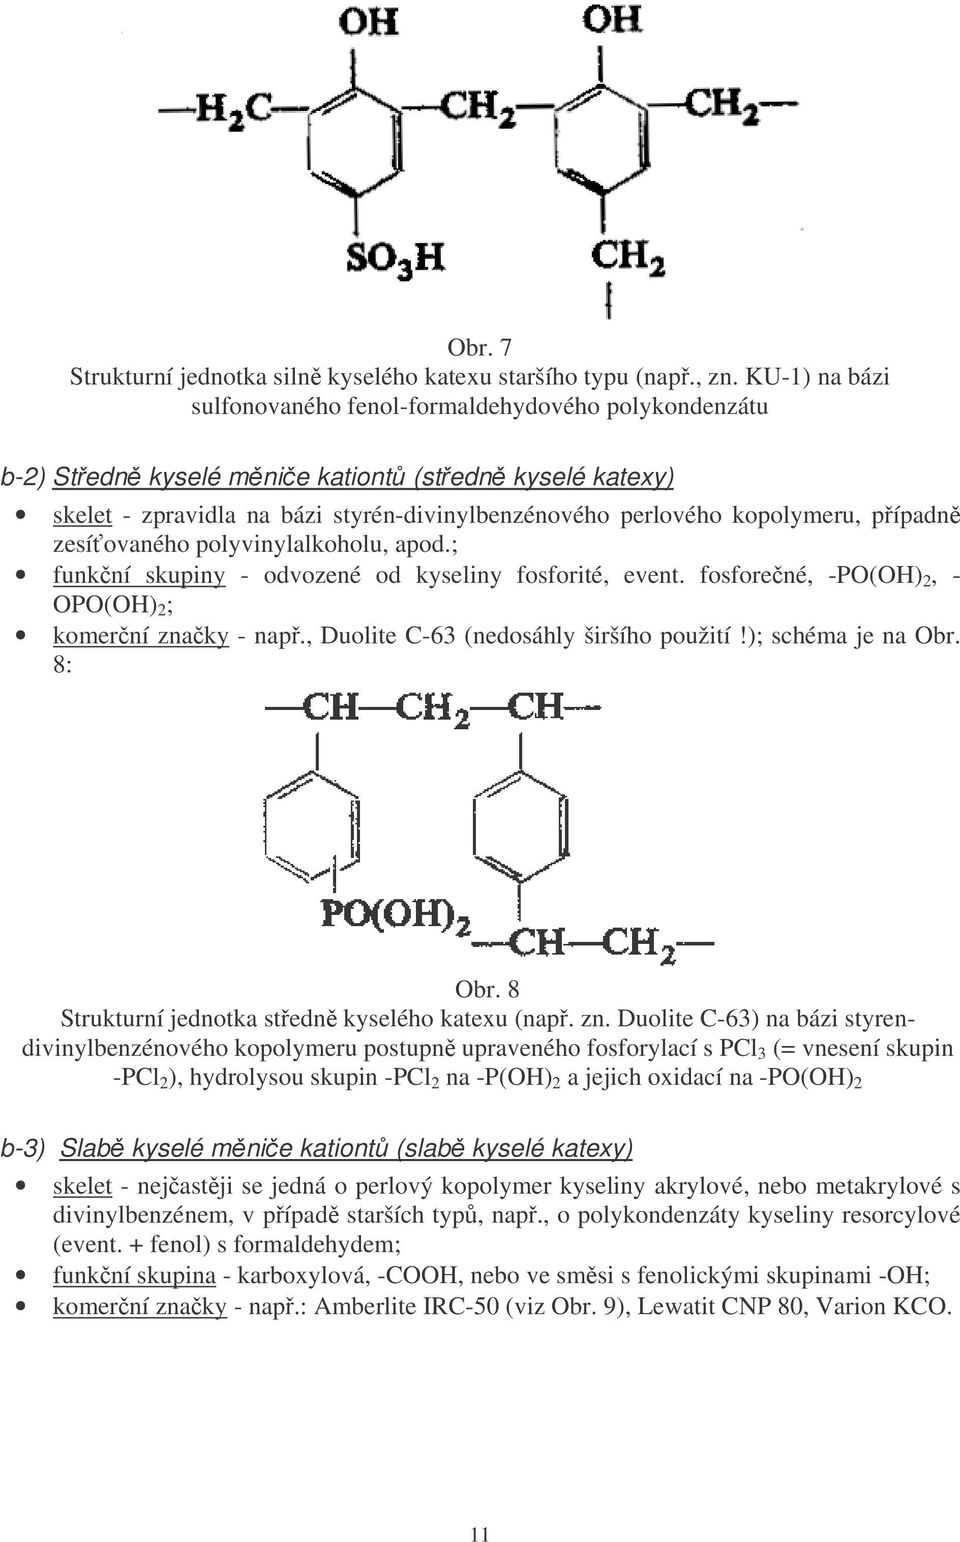 pípadn zesíovaného polyvinylalkoholu, apod.; funkní skupiny - odvozené od kyseliny fosforité, event. fosforené, -PO(OH) 2, - OPO(OH) 2 ; komerní znaky - nap., Duolite C-63 (nedosáhly širšího použití!